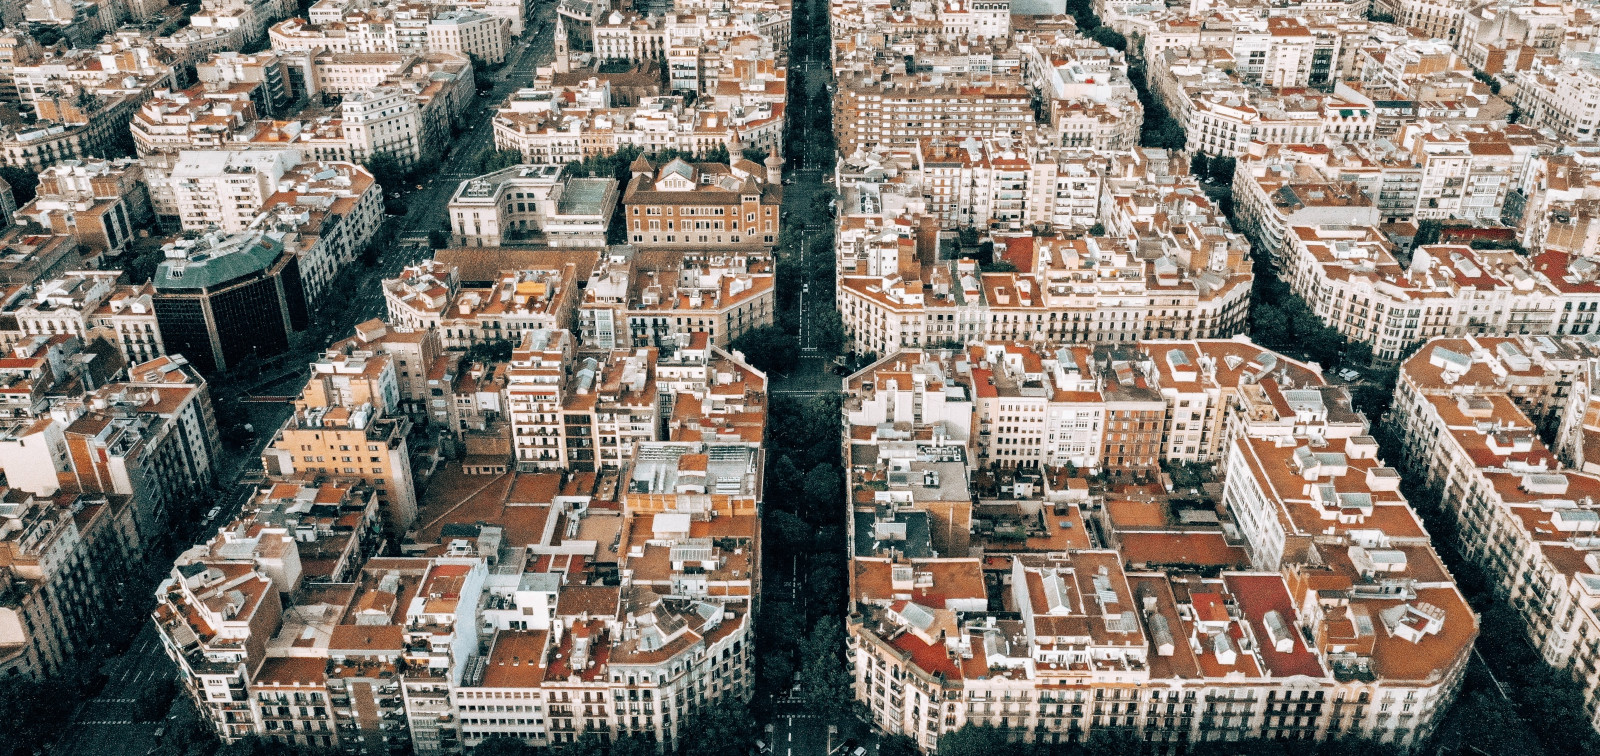 Barcelona's Eixample neighbourhood